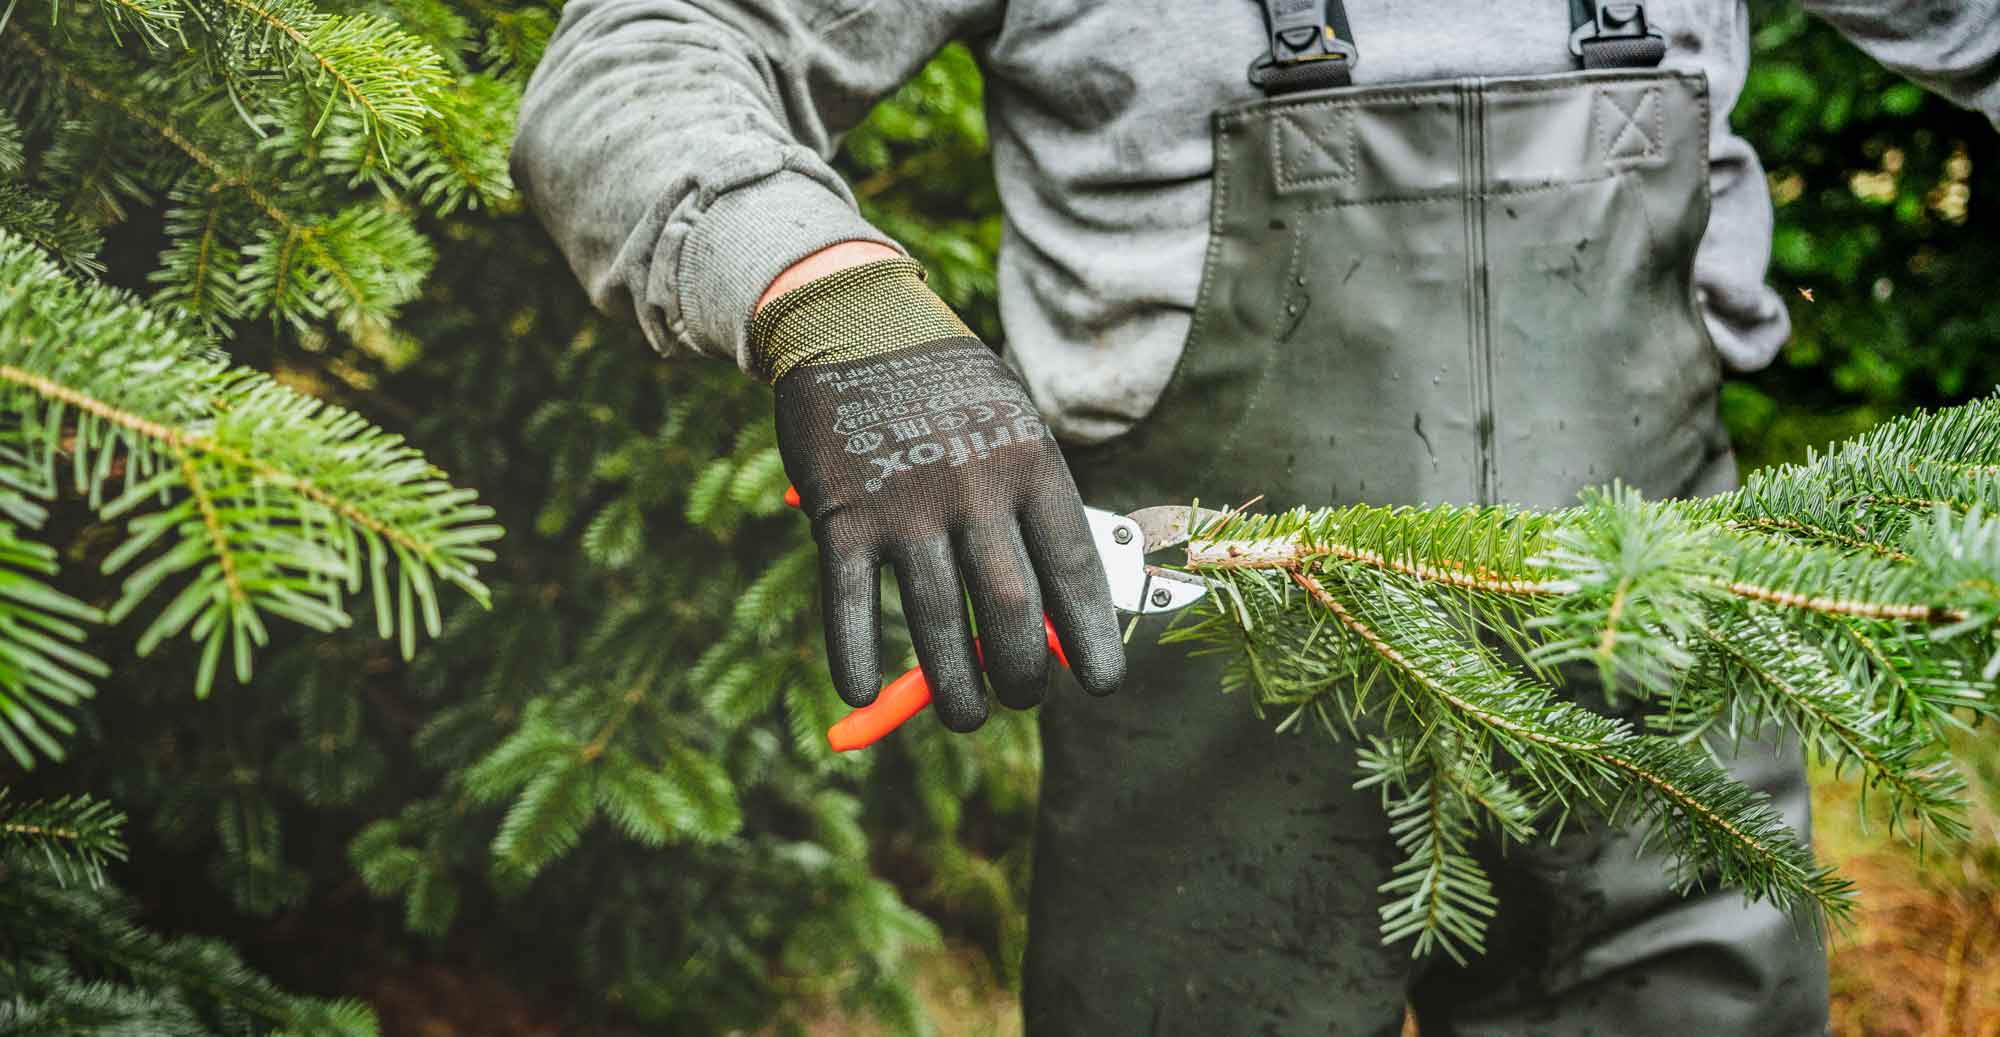 Bio Schnittgrün Tannenzweige für den Weihnachtsbaum aus nachhaltigem Anbau